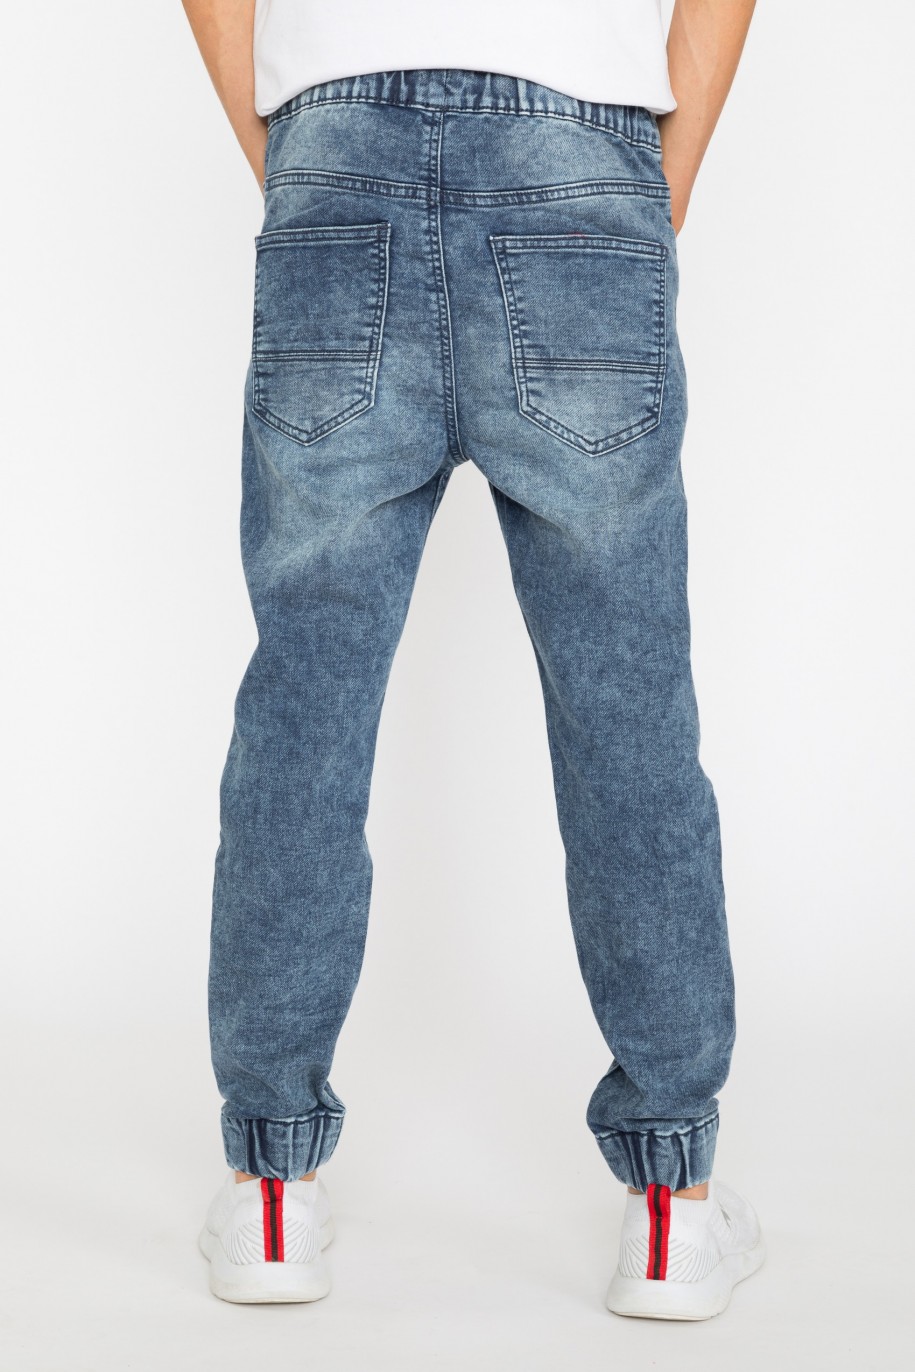 Granatowe jeansowe joggery dla chłopaka - 29328